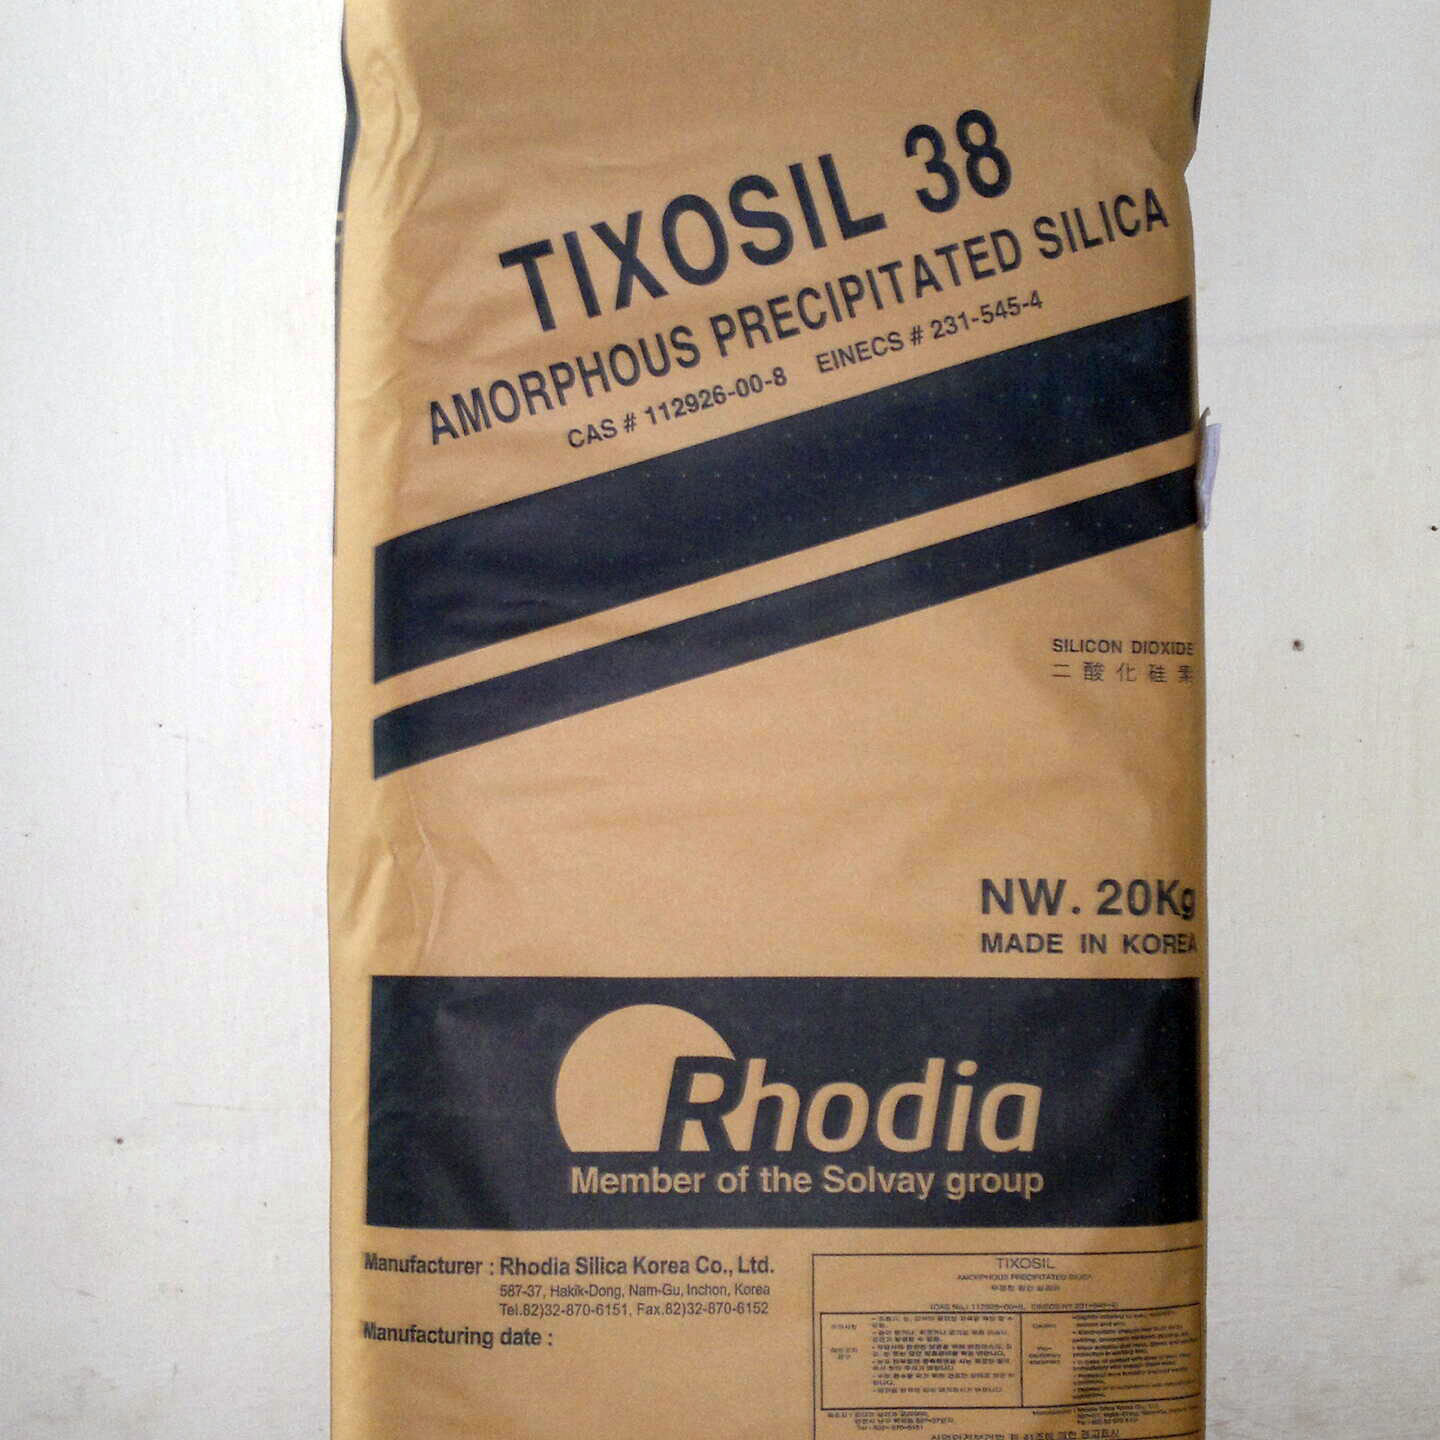 Tixosil 38